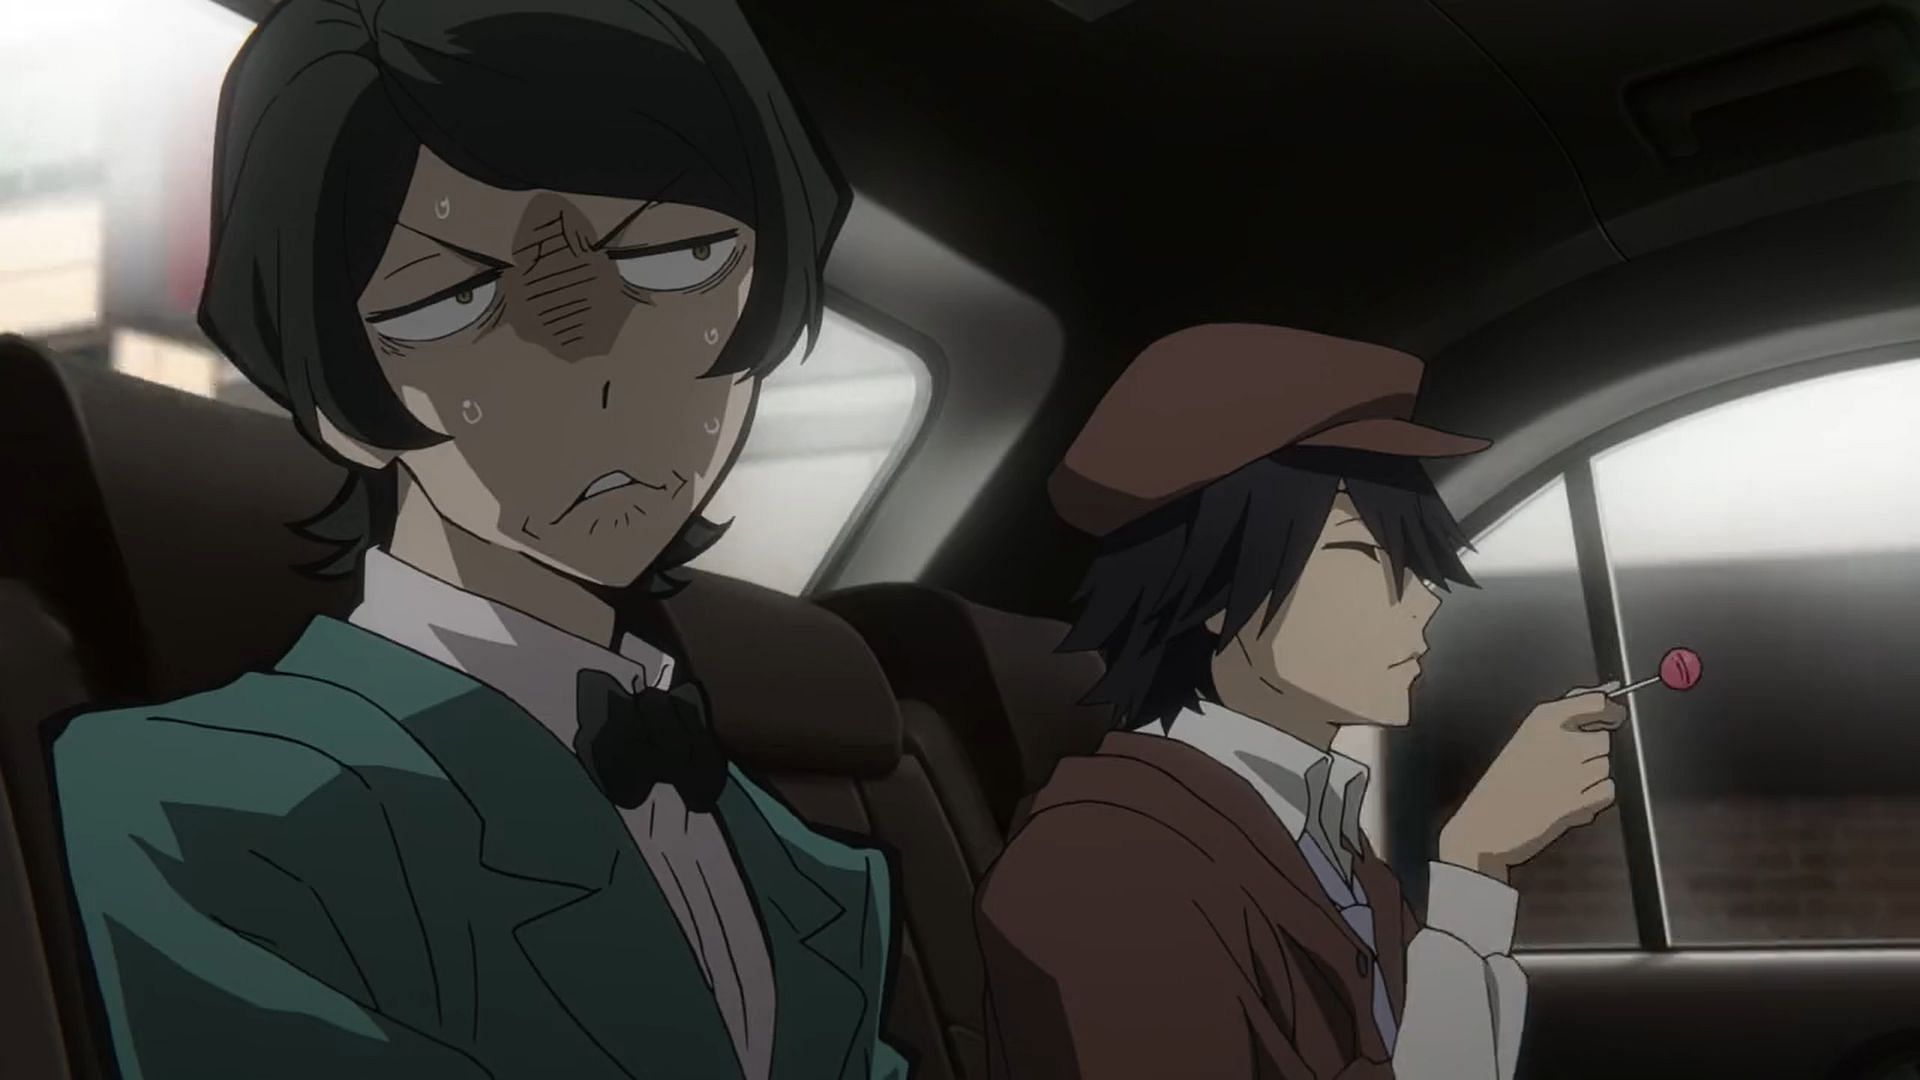 Mushitaro Oguri and Ranpo Edogawa as seen in the anime (Image via BONES)